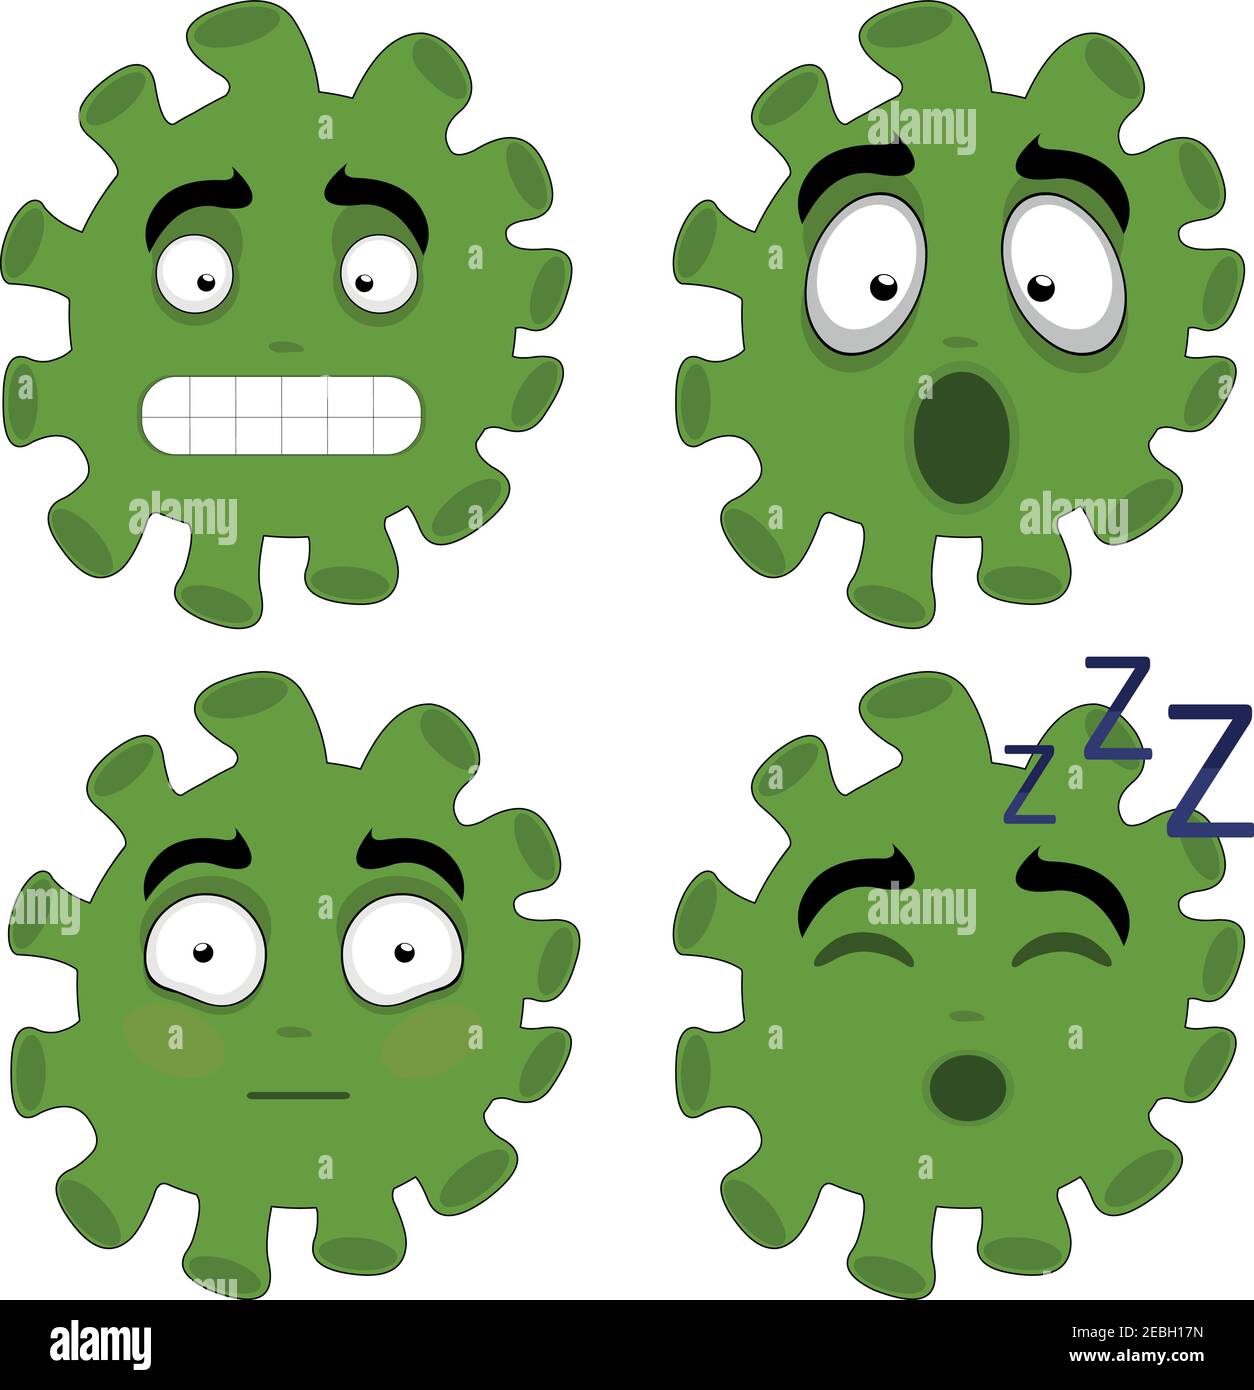 Illustrazione vettoriale delle emoticon di coronavirus Illustrazione Vettoriale